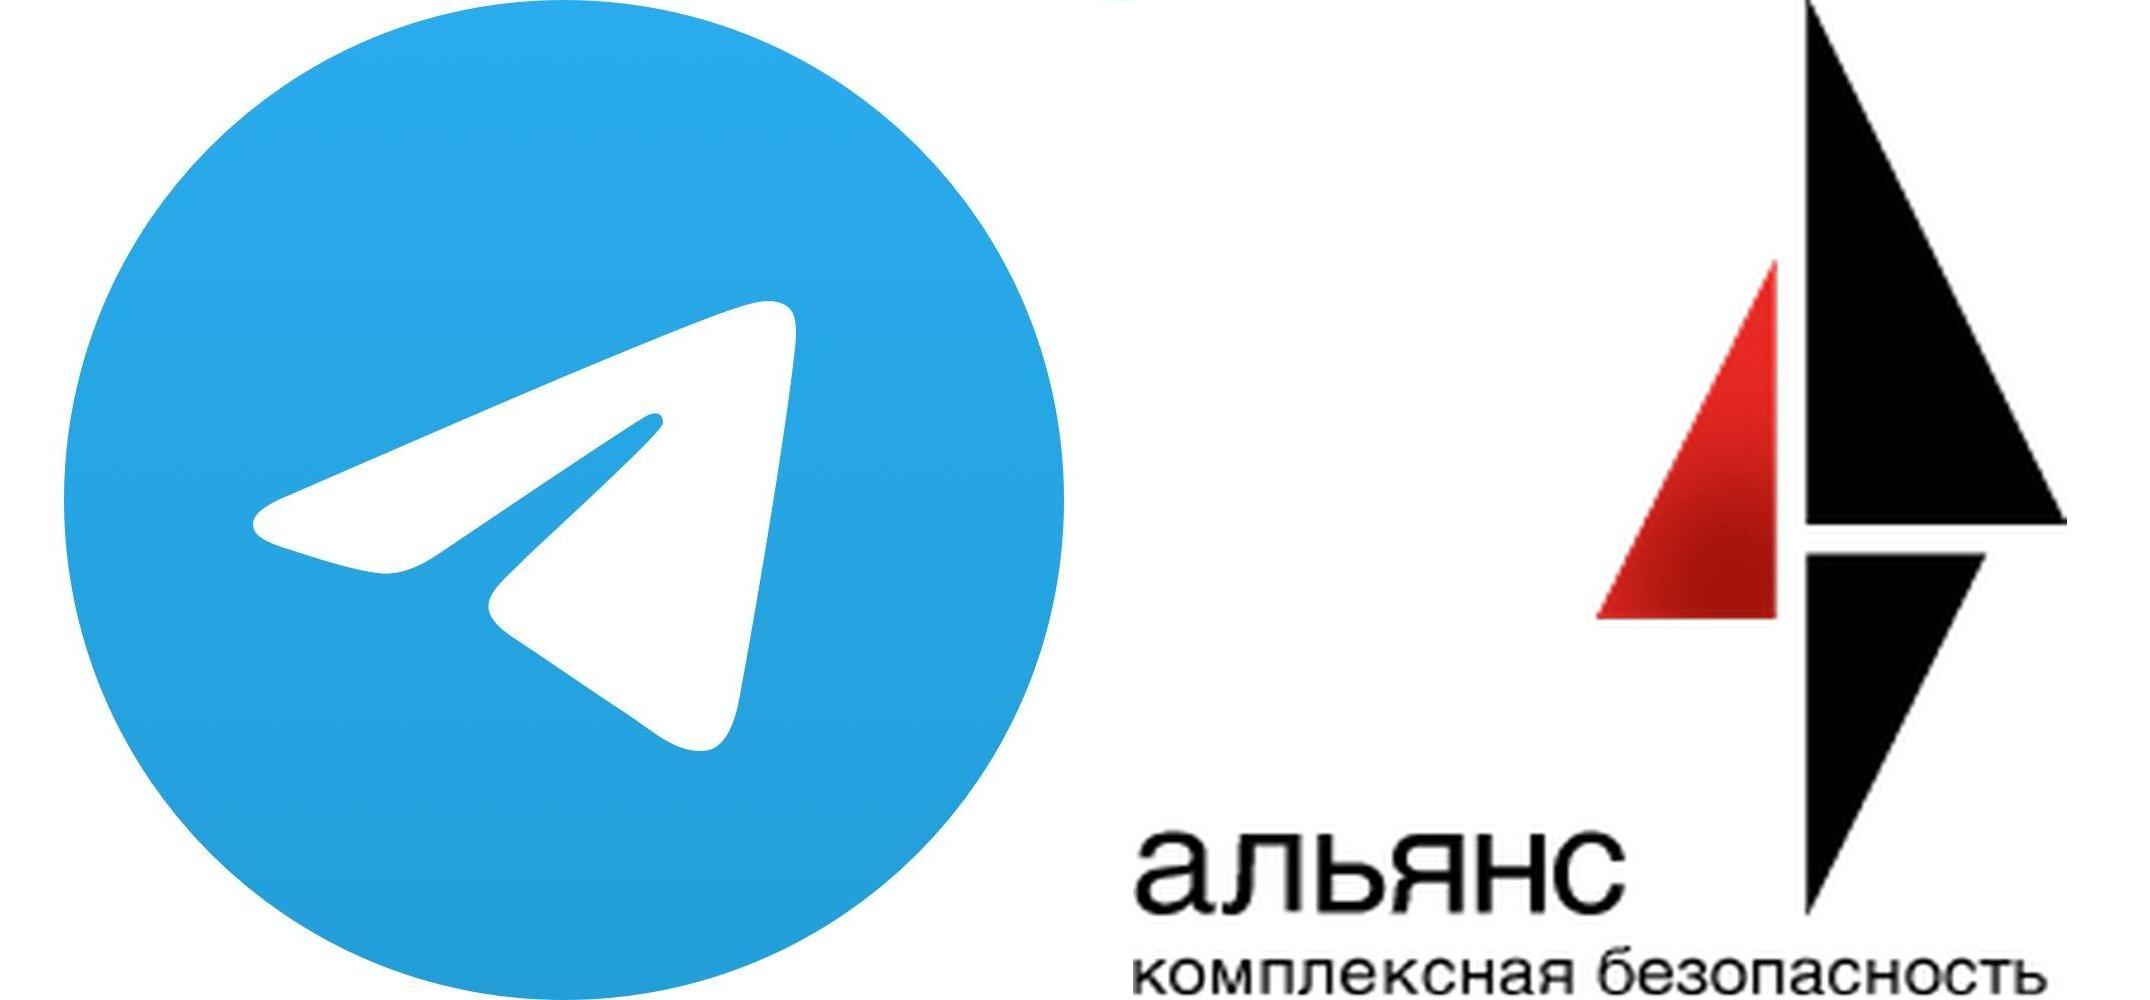 Телеграм канал компании Альянс "Комплексная безопасность"